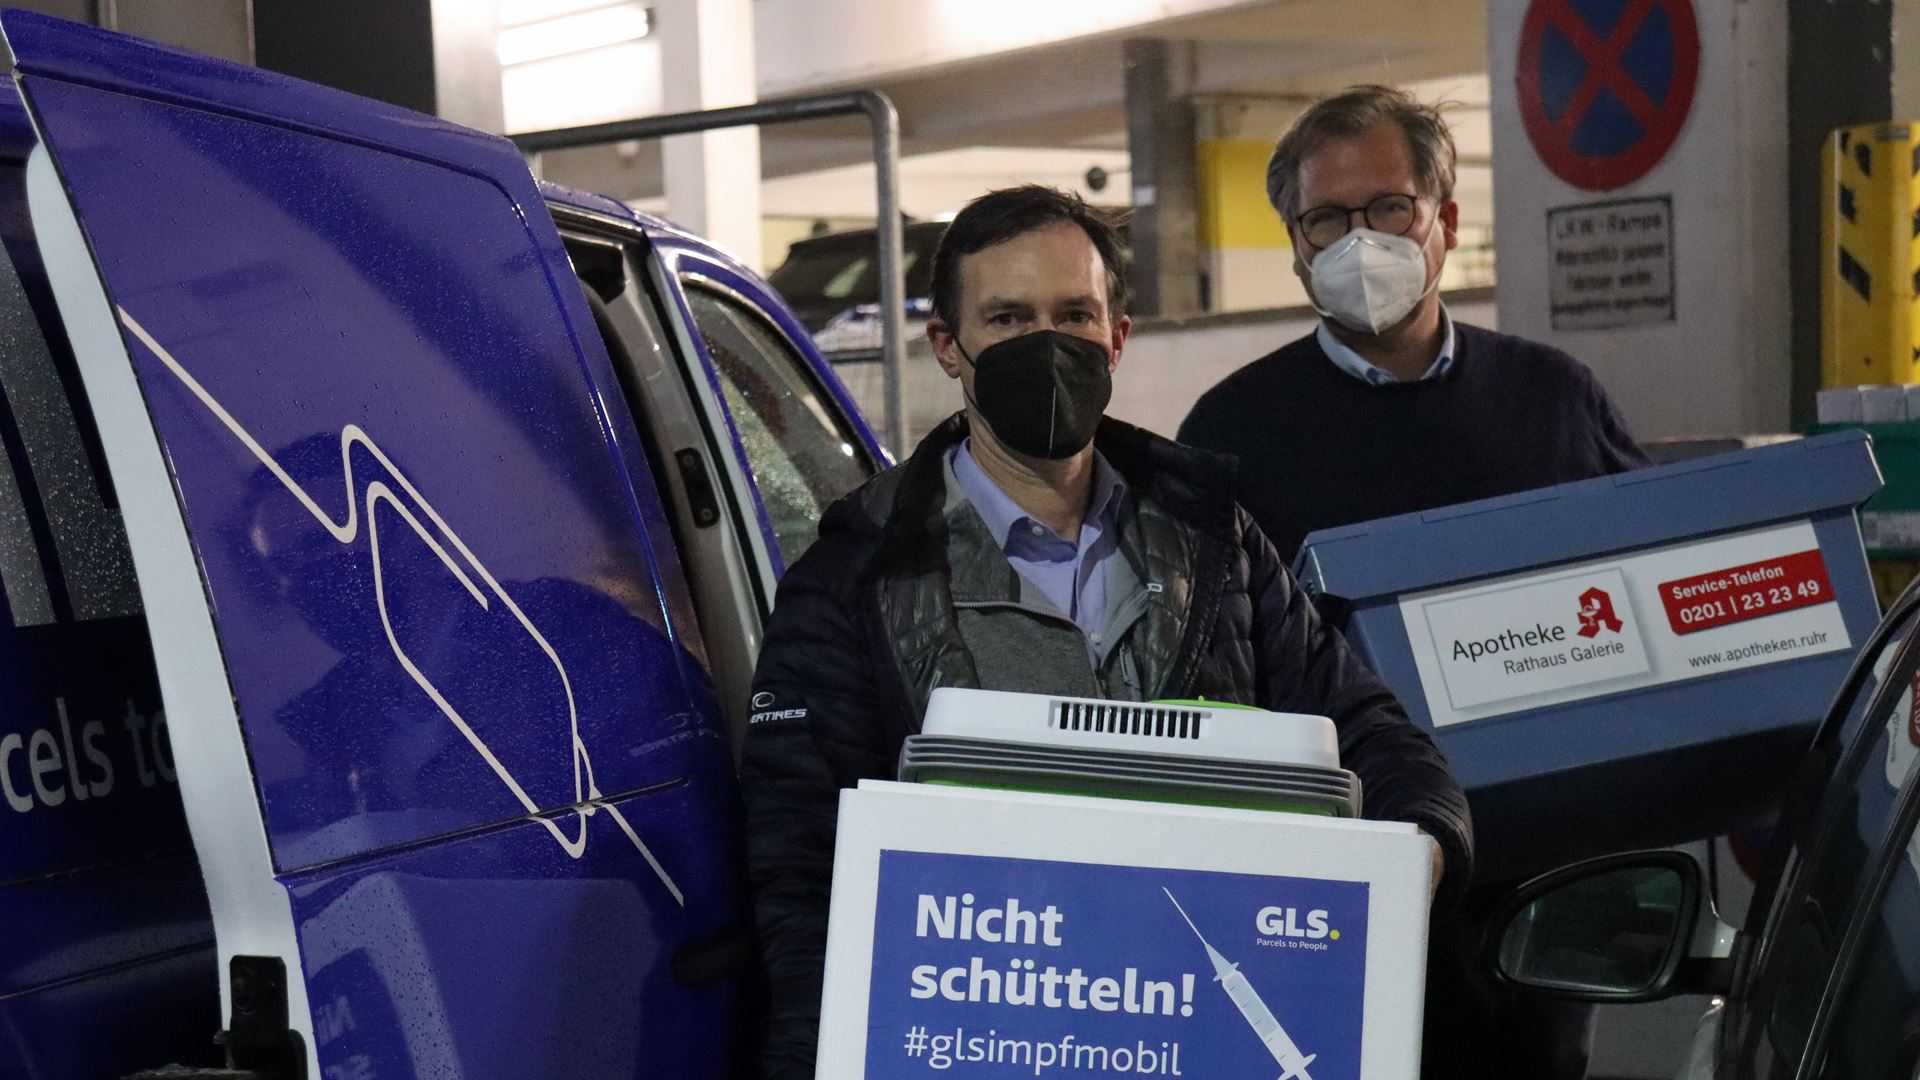 Zusammen im Kampf gegen die Pandemie: GLS Germany organisiert deutschlandweite Impfkampagne mit eigenem Impfmobil